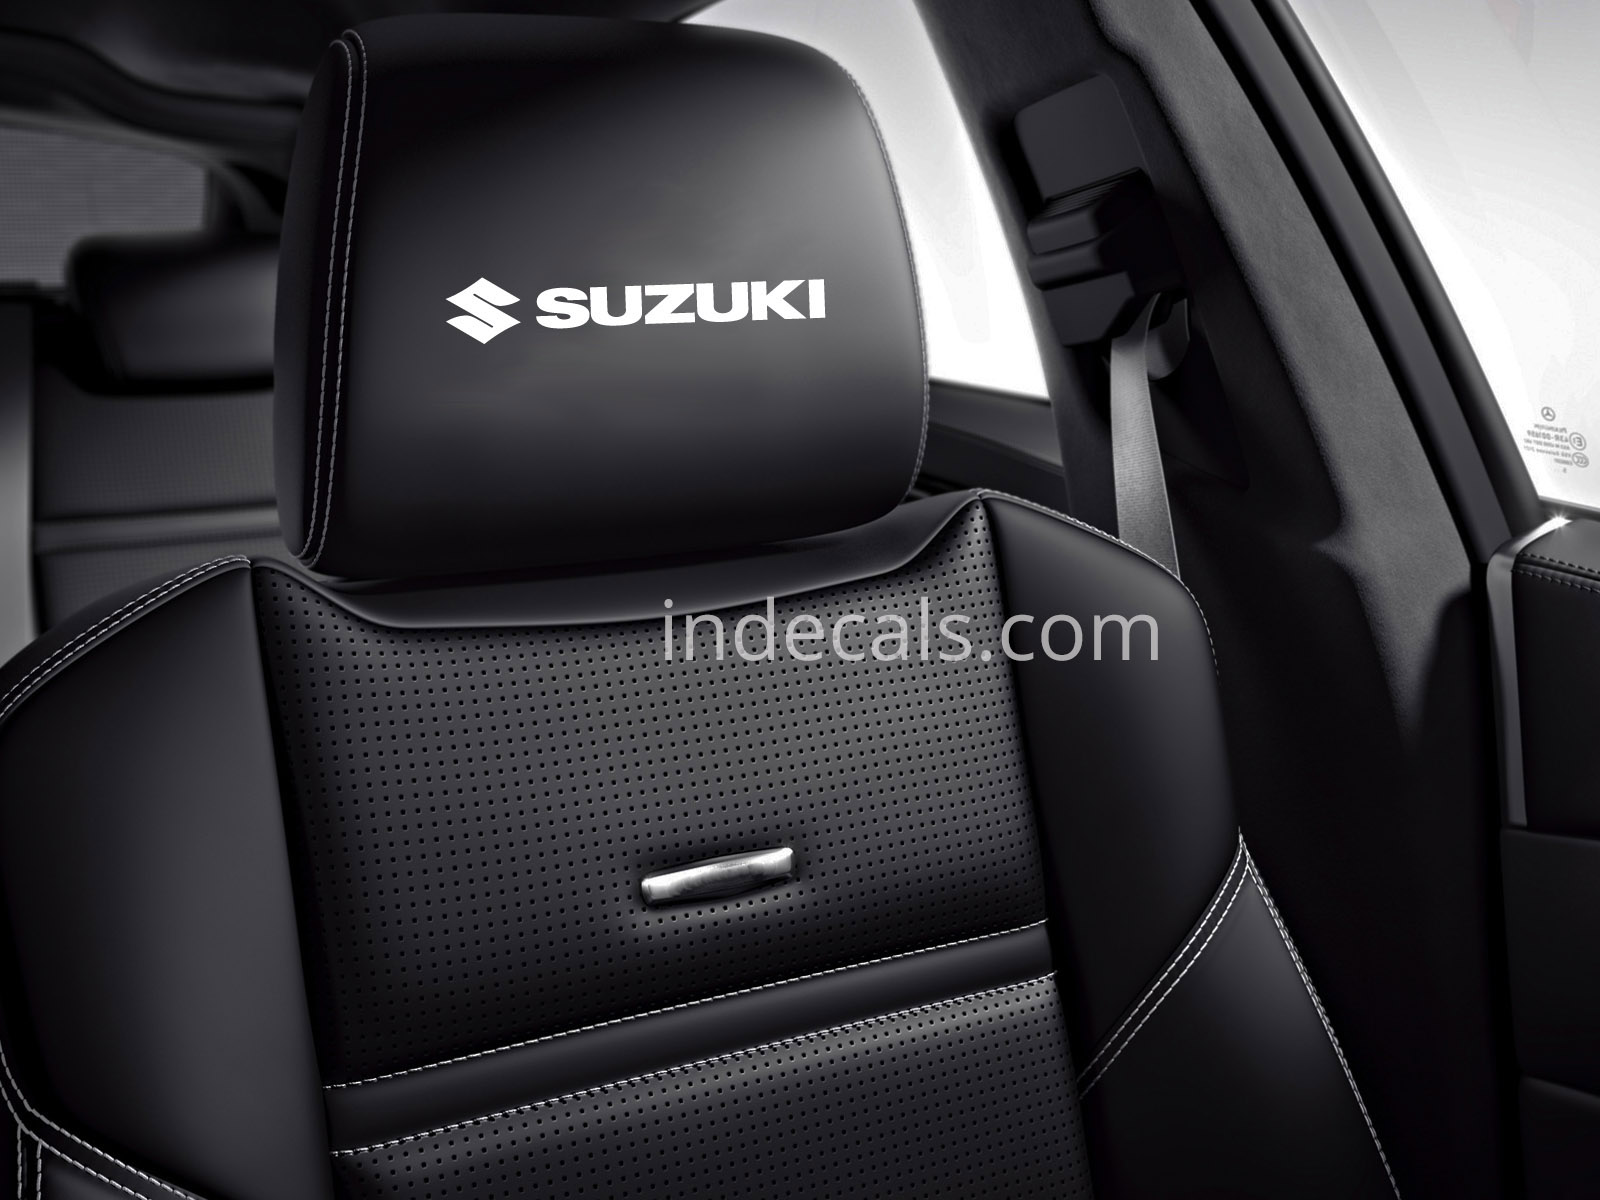 6 x Suzuki Stickers for Headrests - White